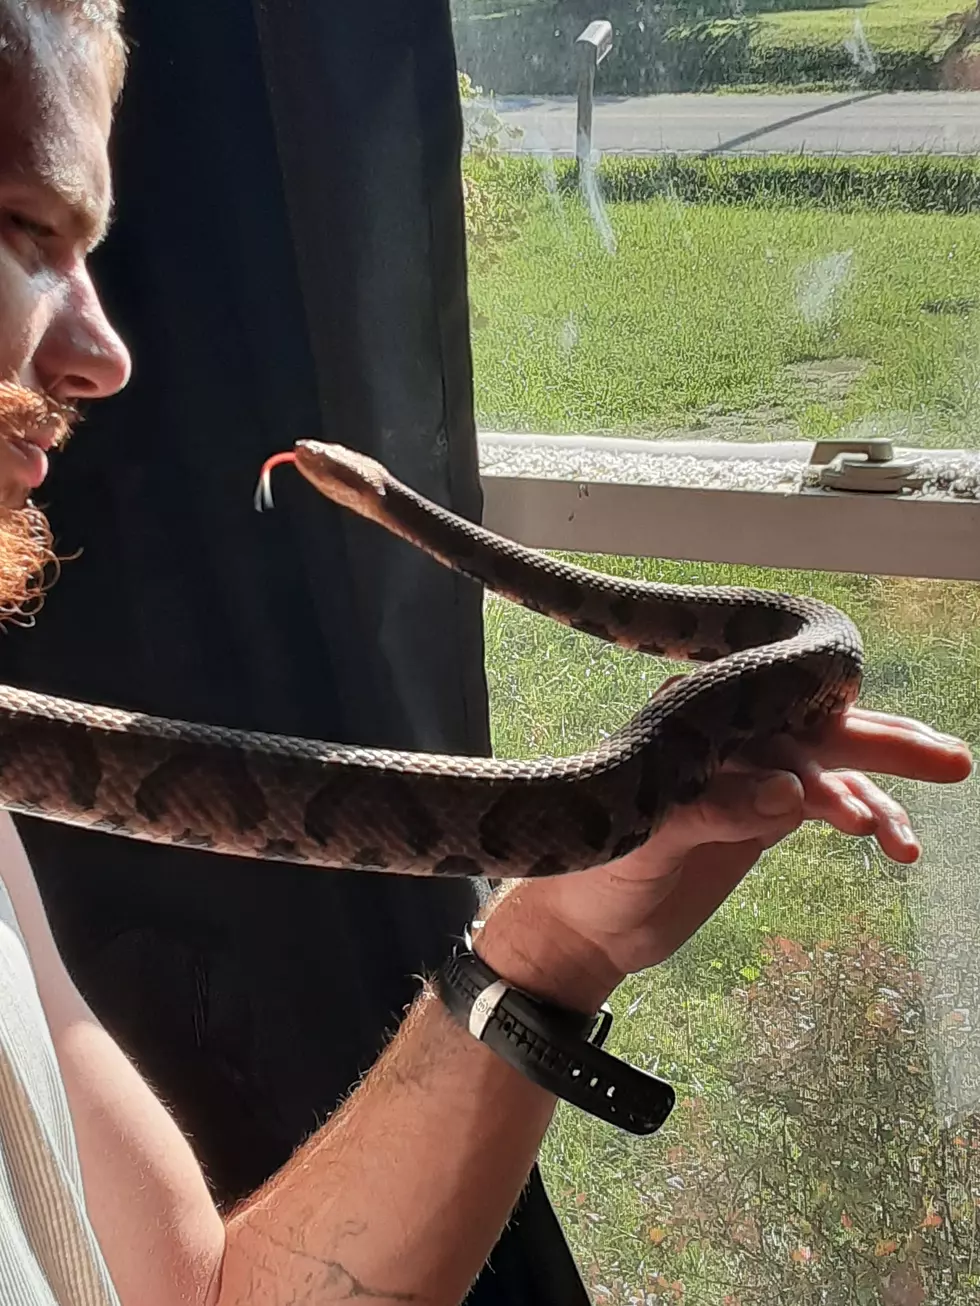 ALERT: Snake Found In Massachusetts Has Lethal Bite